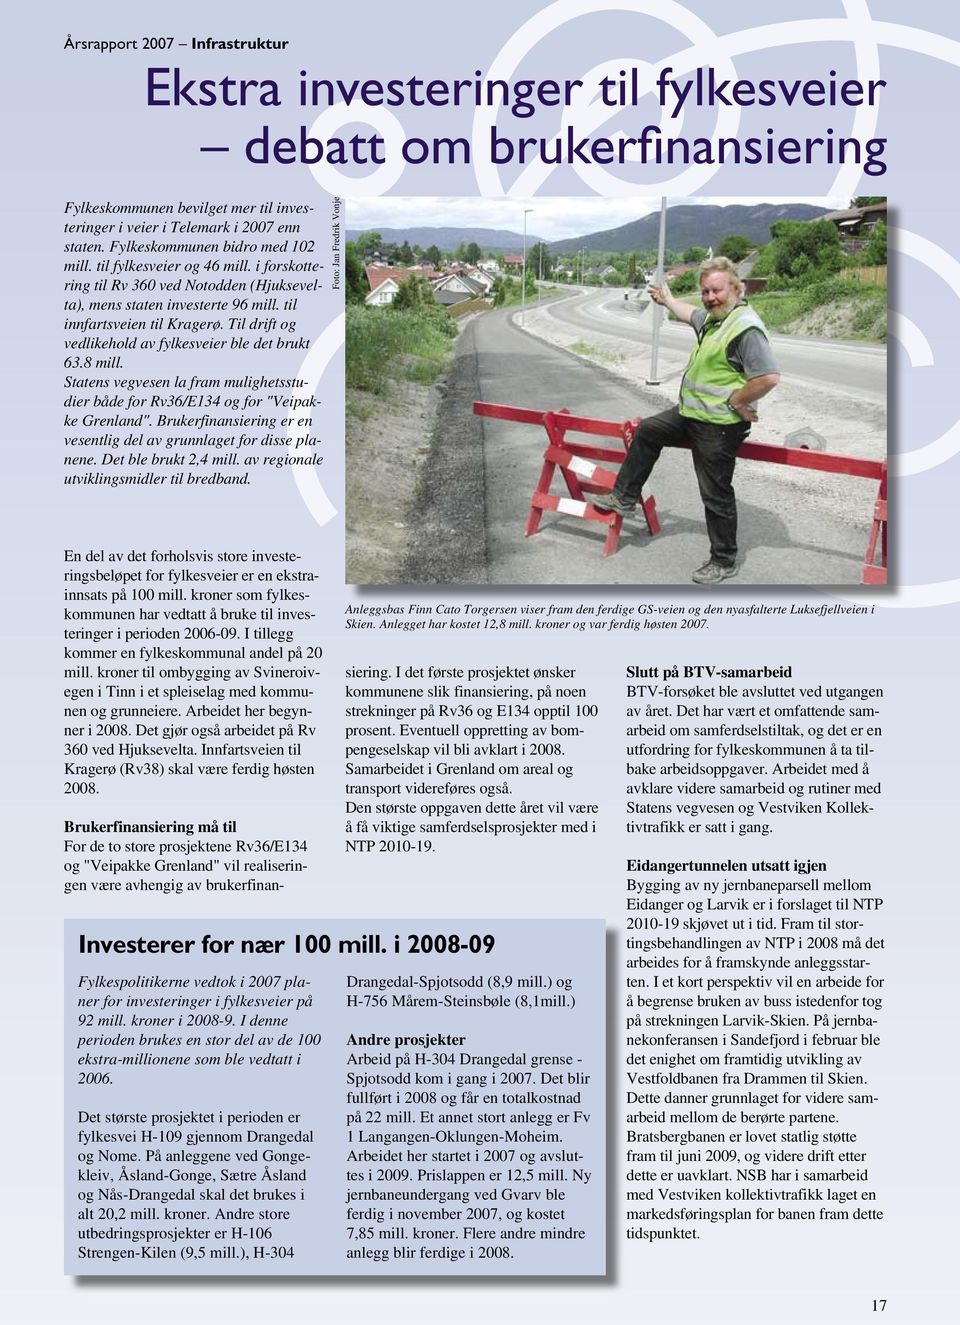 Til drift og vedlikehold av fylkesveier ble det brukt 63.8 mill. Statens vegvesen la fram mulighetsstudier både for Rv36/E134 og for "Veipakke Grenland".